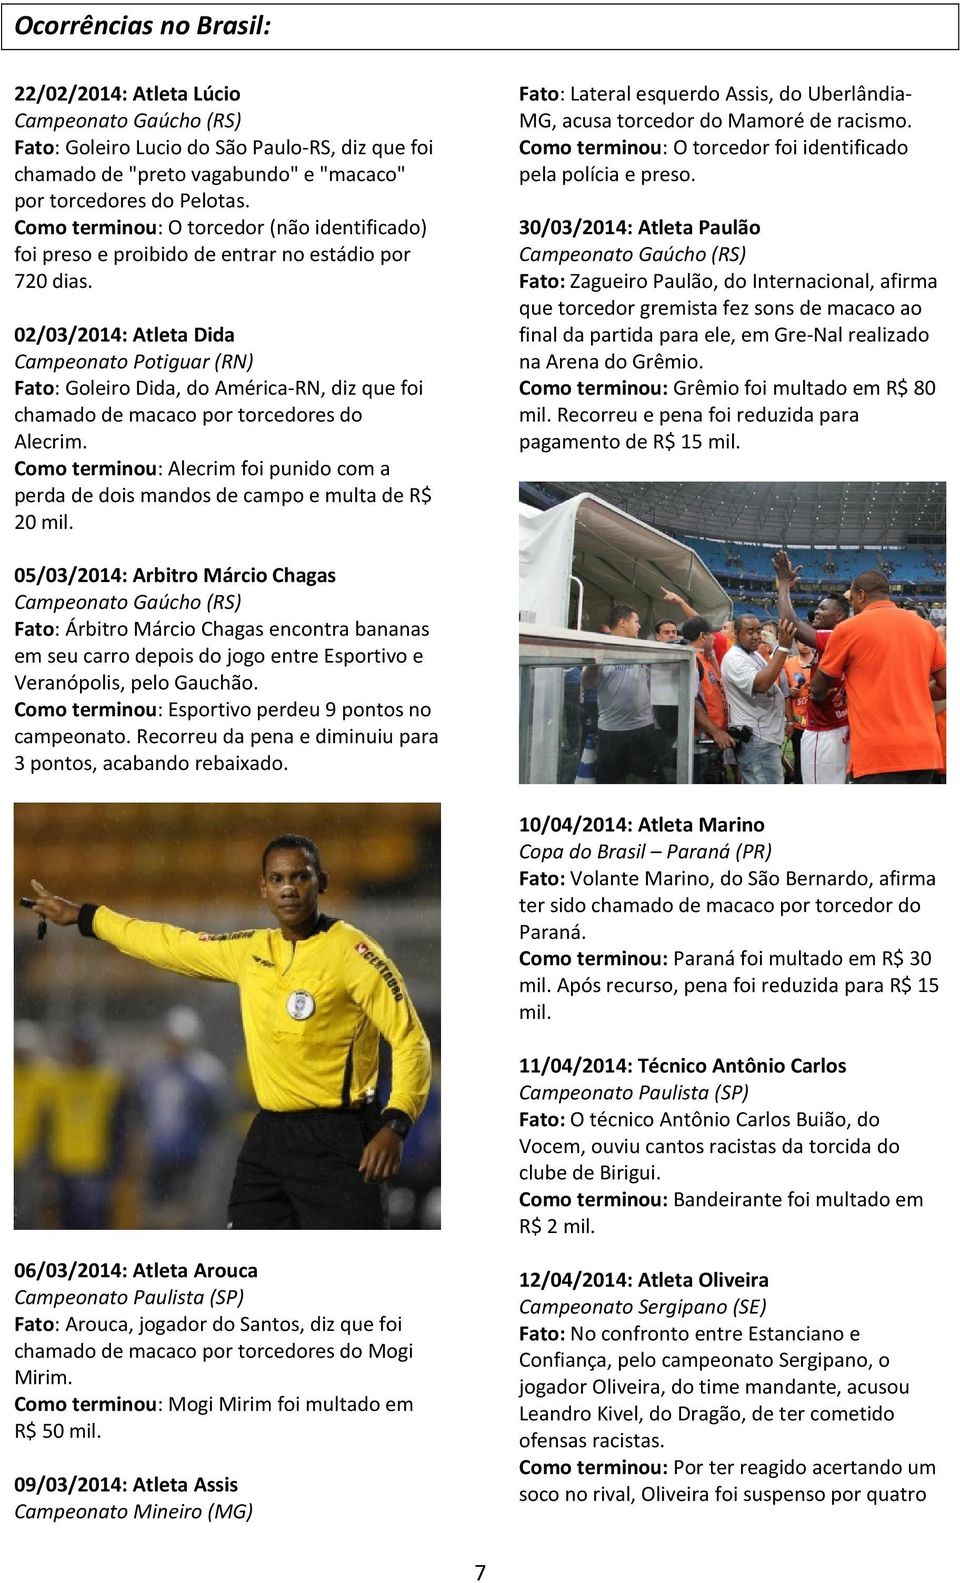 02/03/2014: Atleta Dida Campeonato Potiguar (RN) Fato: Goleiro Dida, do América-RN, diz que foi chamado de macaco por torcedores do Alecrim.